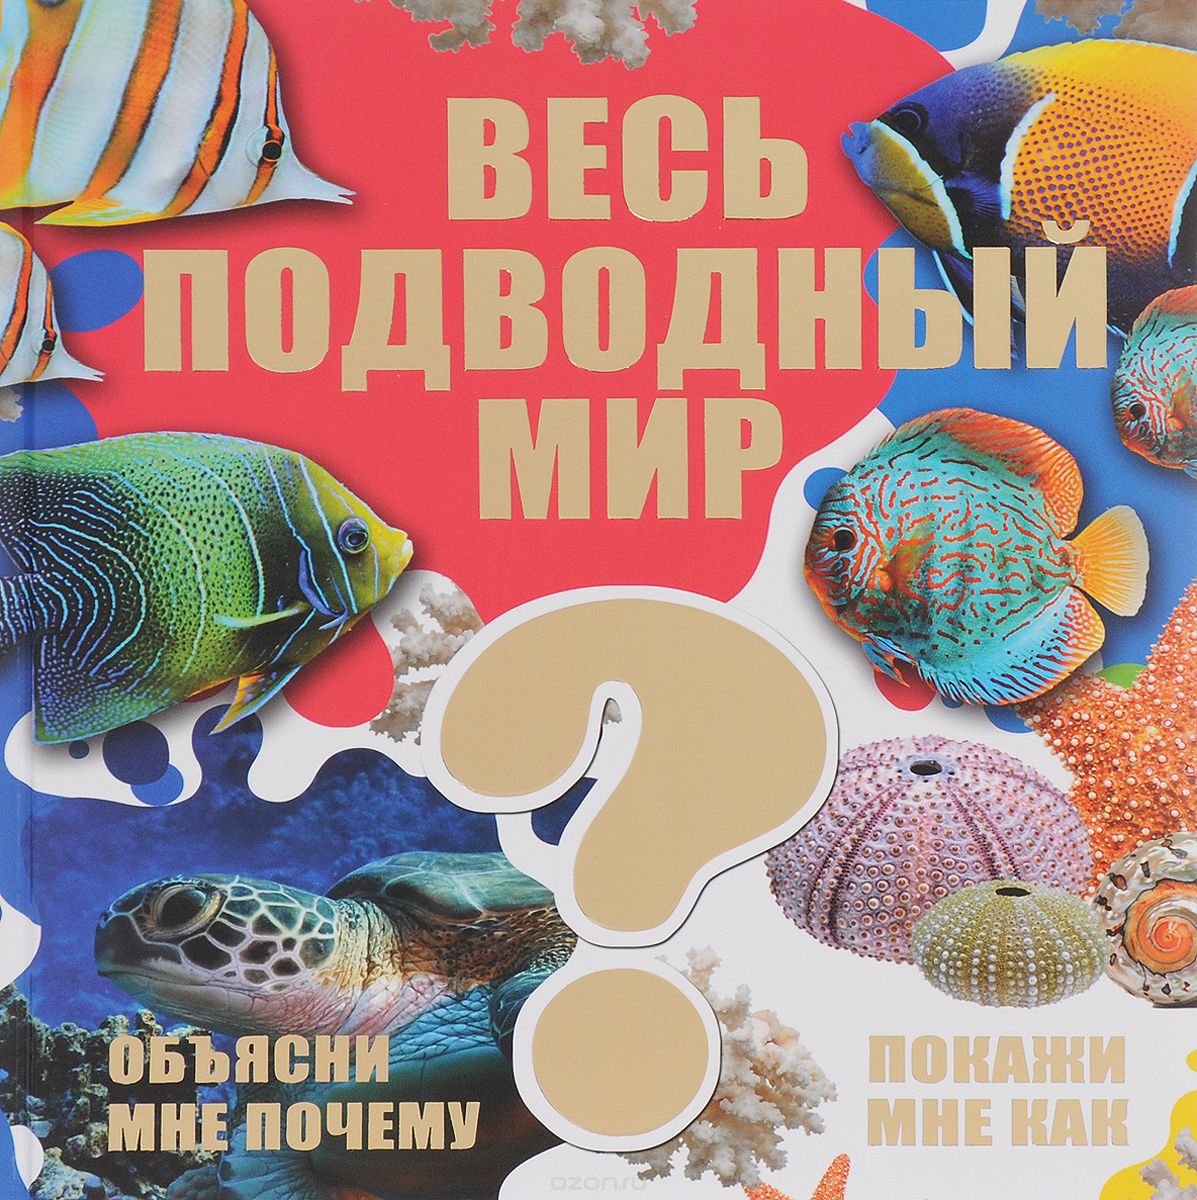 Скачать книгу "Весь подводный мир, Д. В. Кошевар, В. В. Ликсо"